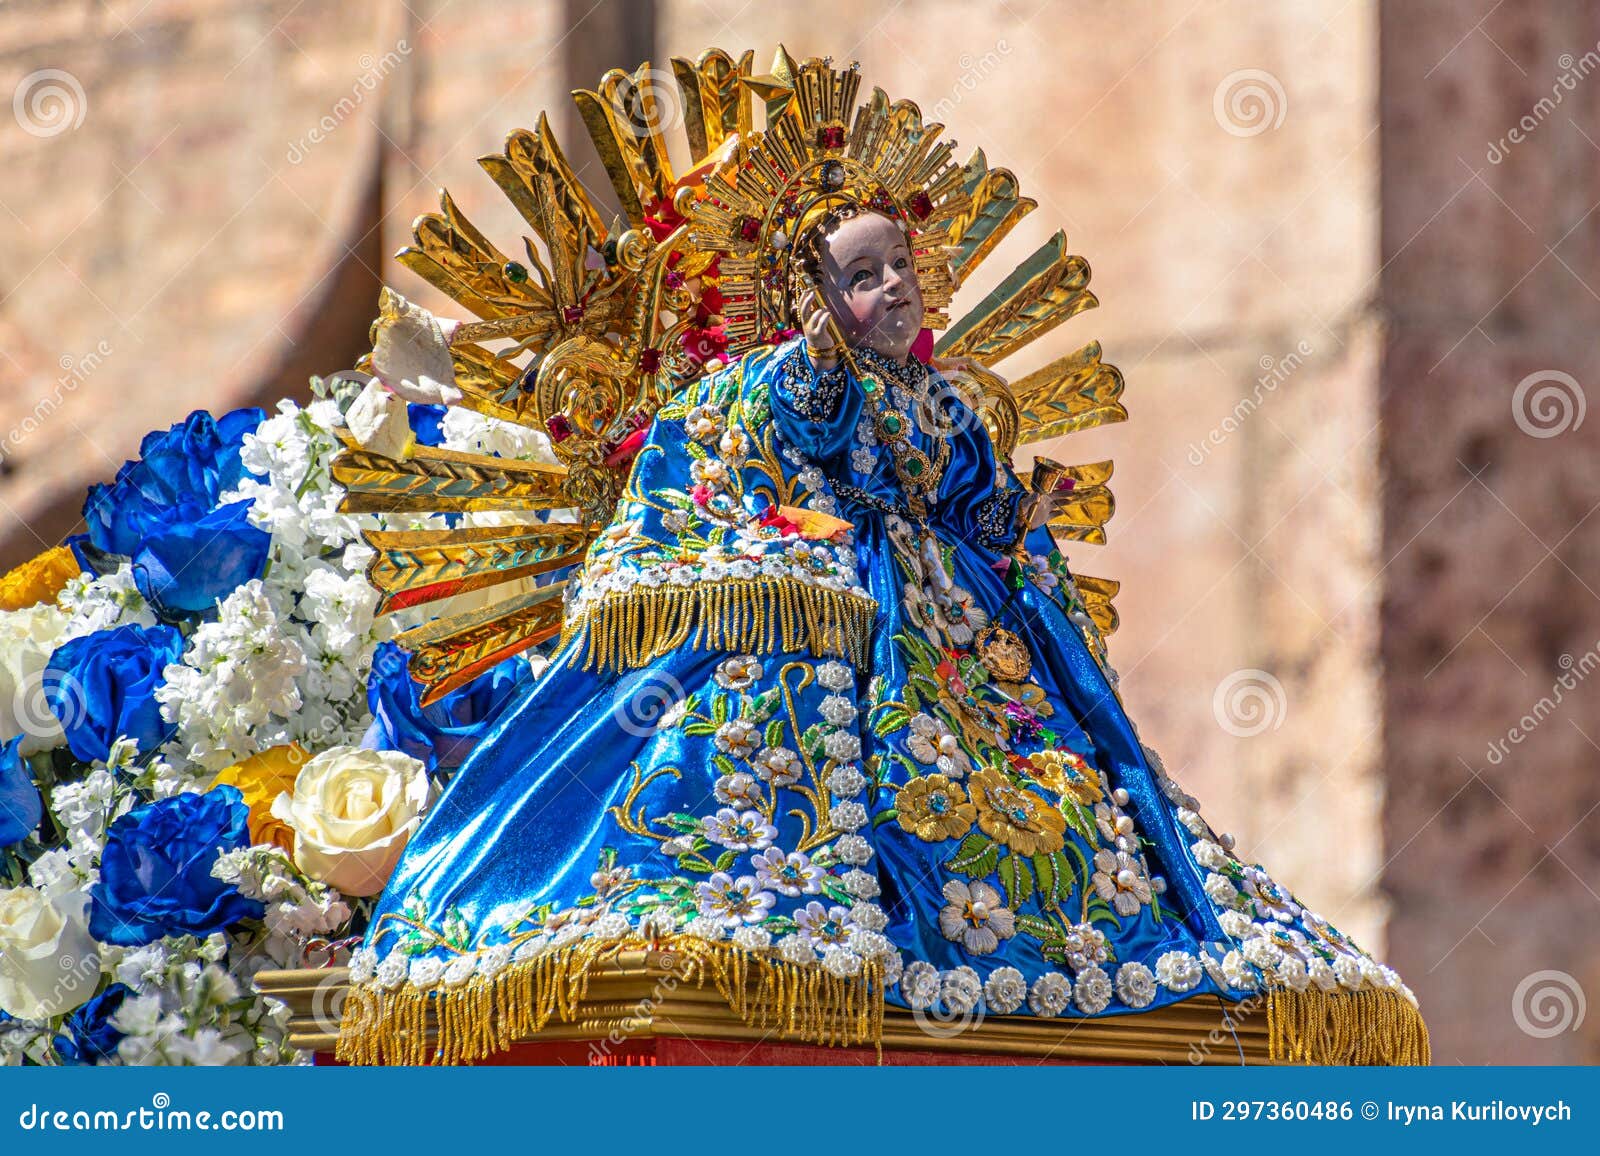 the sculpture of the baby jesus named niÃ±o viajero, ecuador